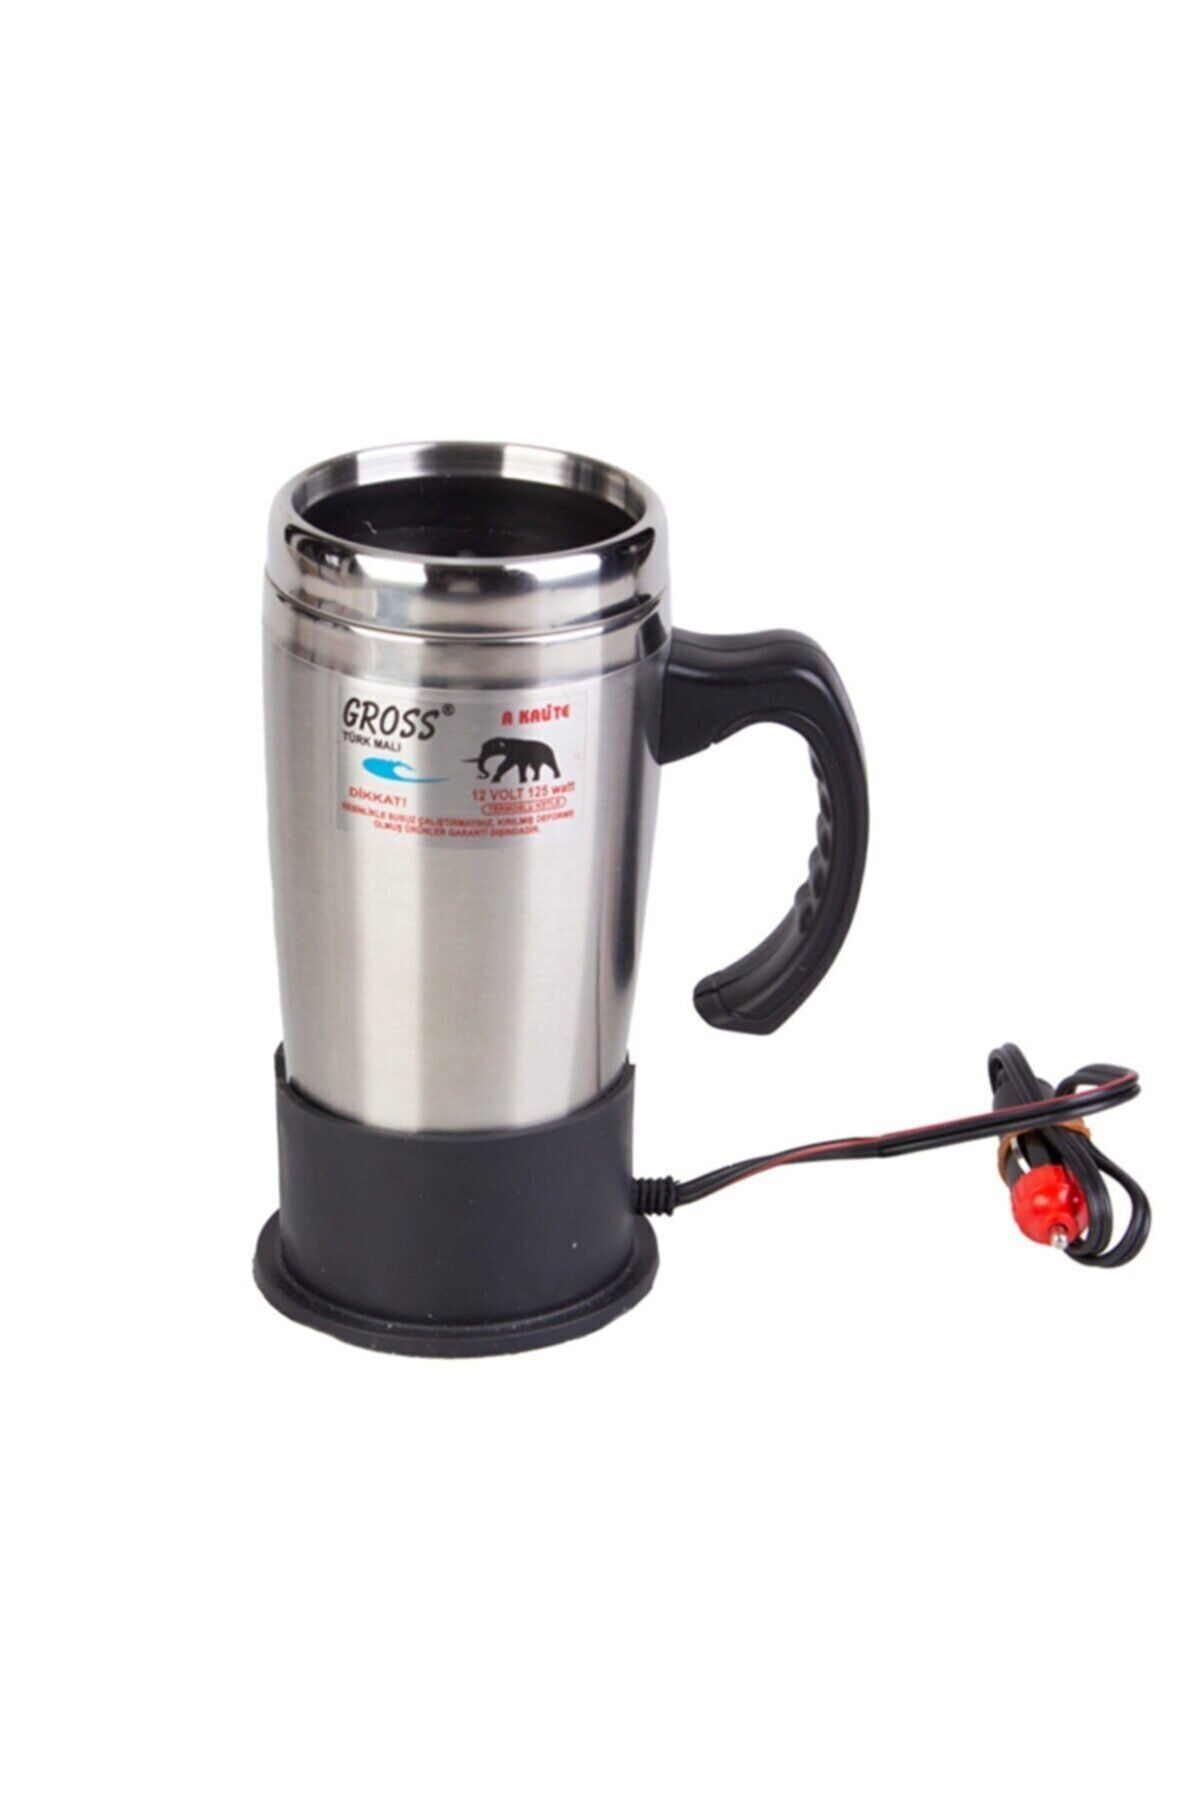 Gross Oto Su Isıtıcı 24v Kettle Kahve Makinası Çaycı Ketıl Tam Kaynatma